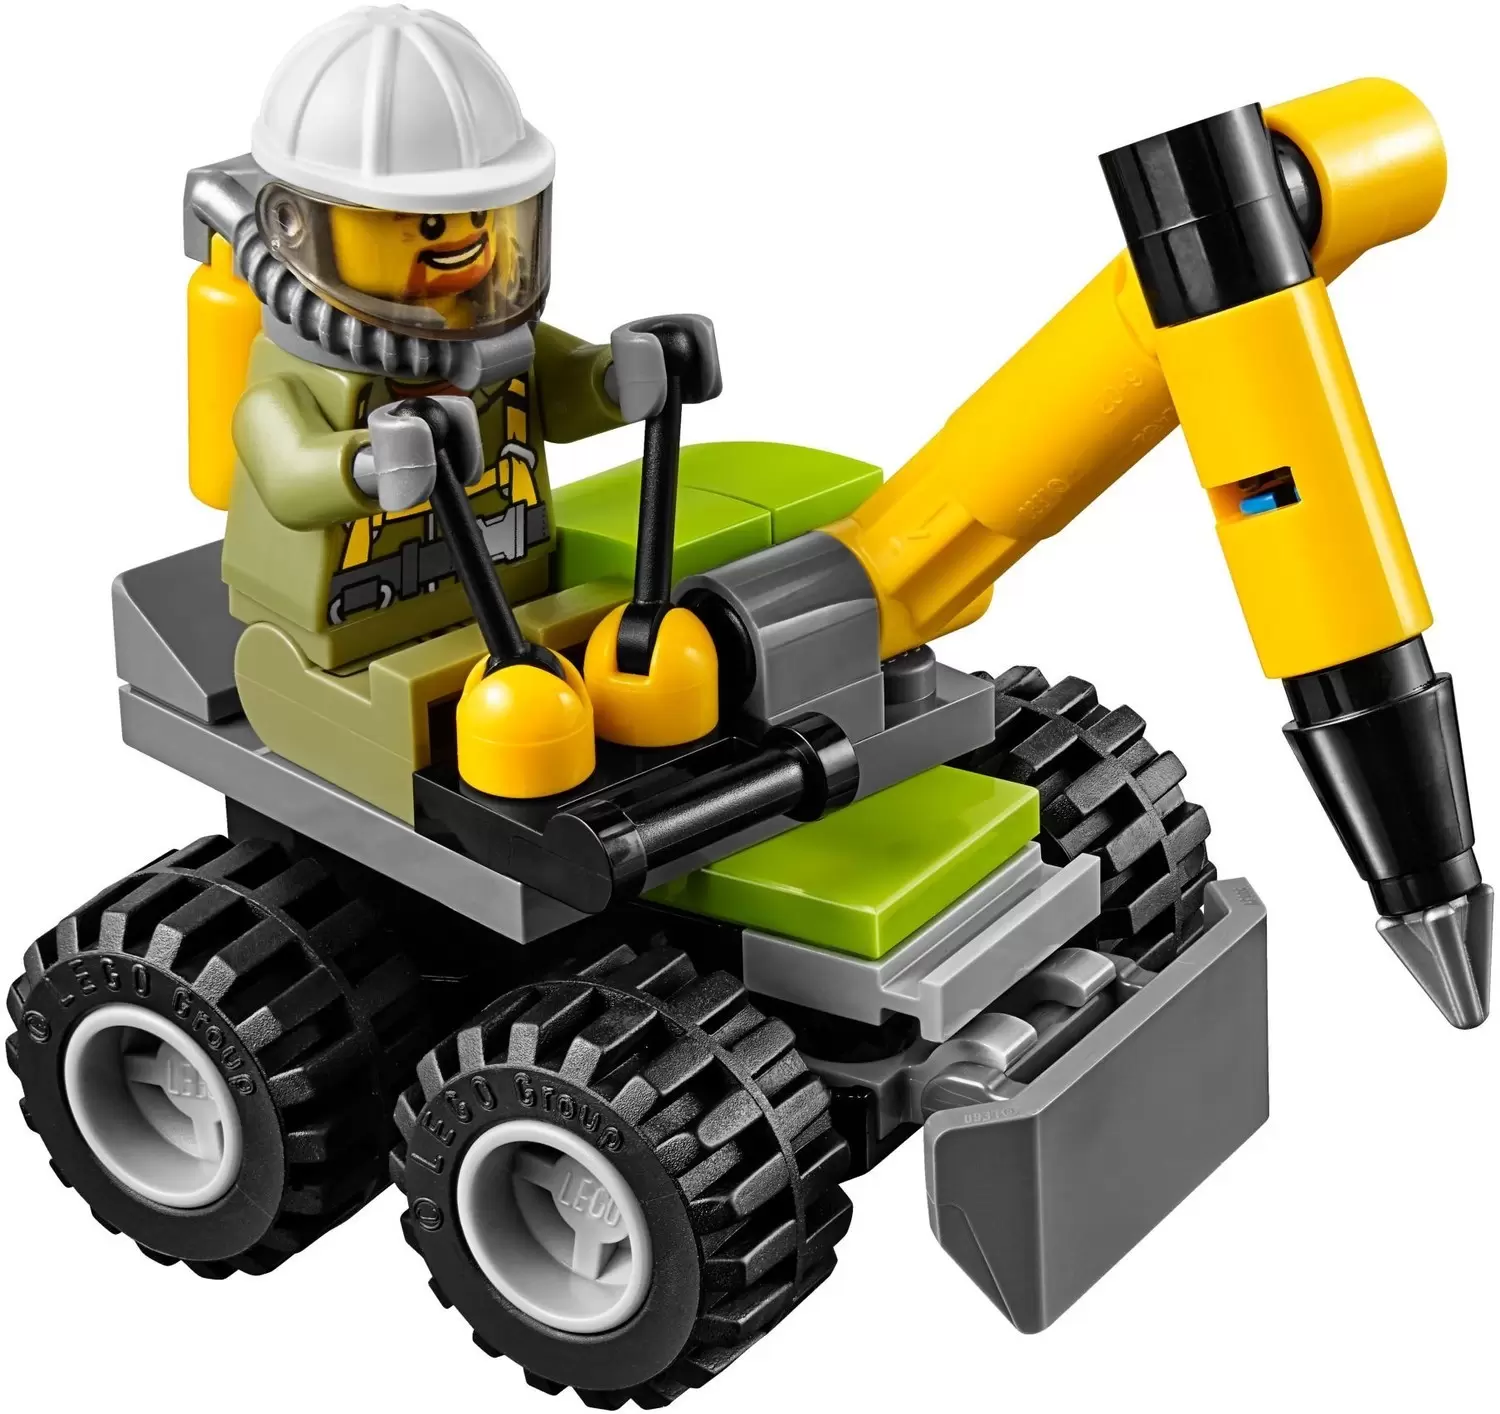 LEGO CITY - Volcano Jackhammer